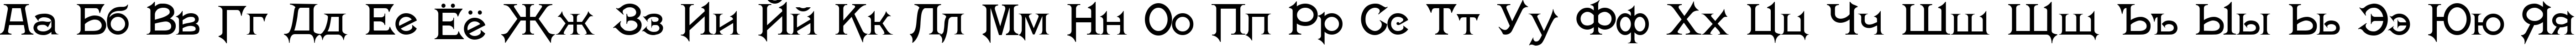 Пример написания русского алфавита шрифтом Washington